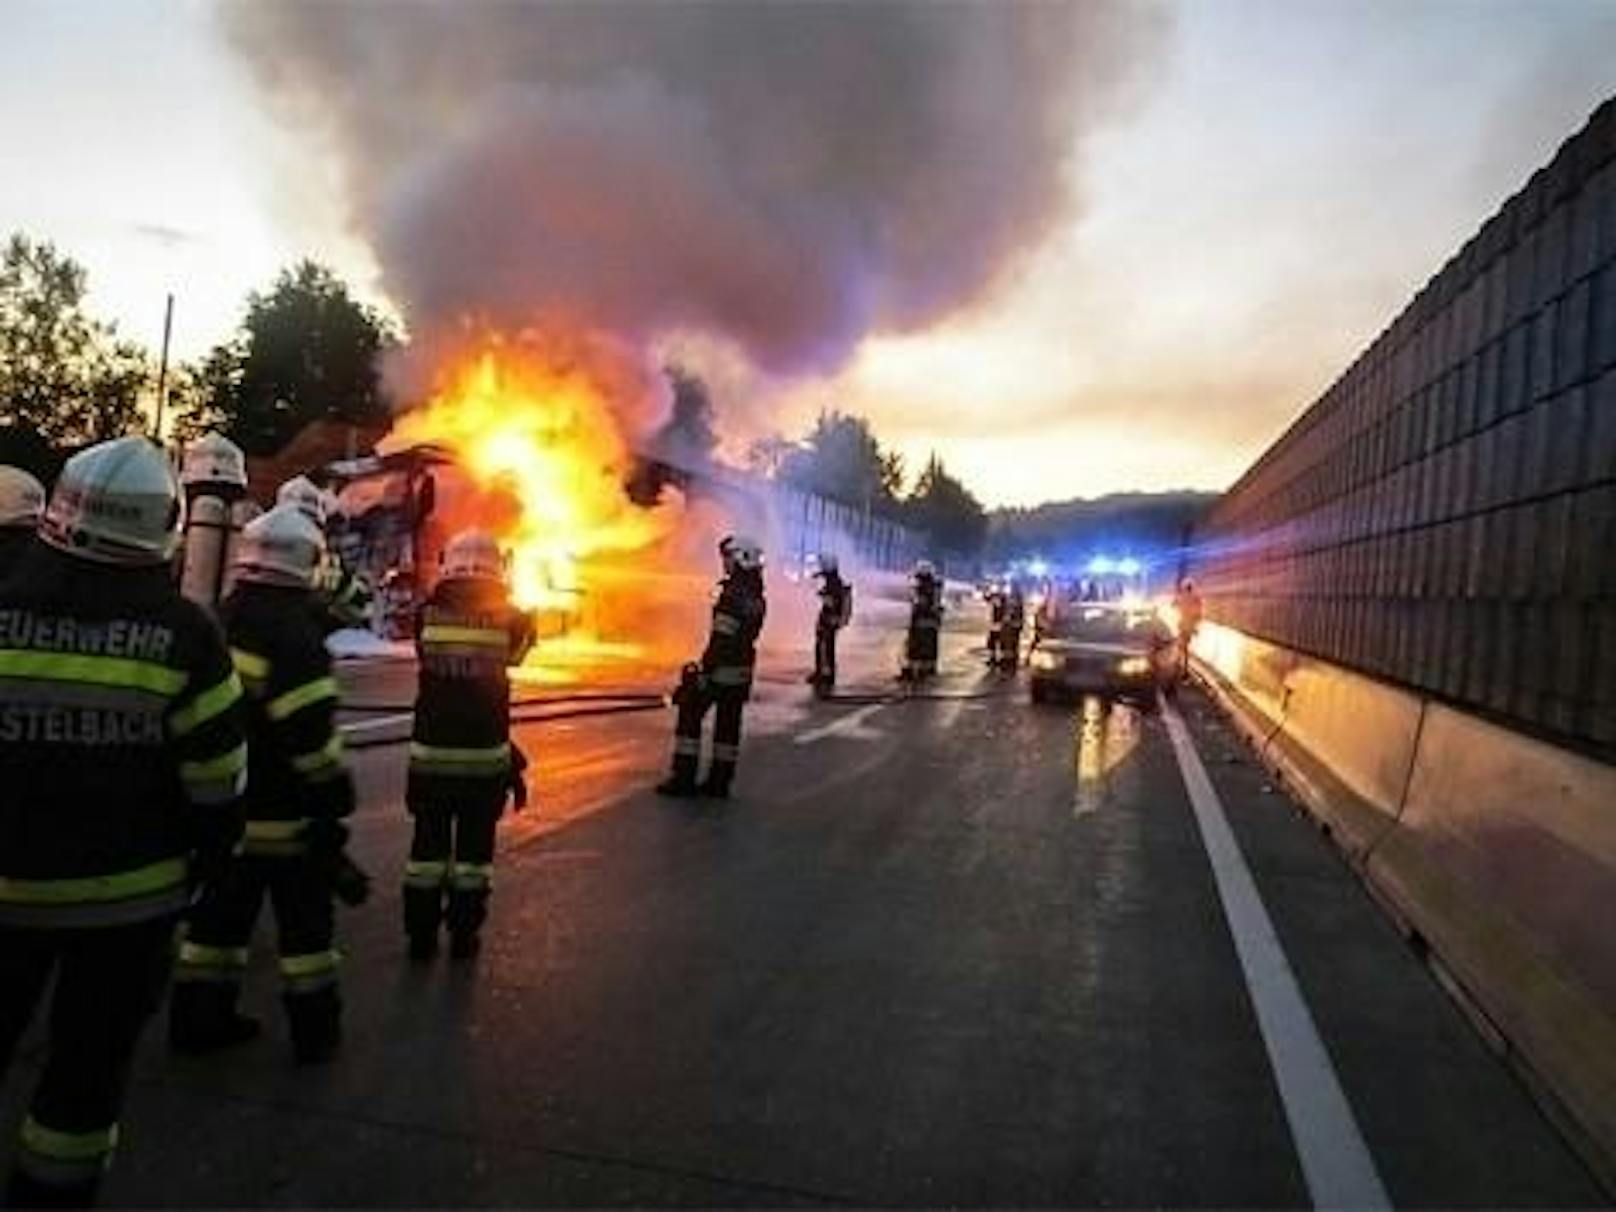 Danach schlitterte das Fahrzeug an einer Betonleitwand entlang, wodurch ein Reifen Feuer fing.